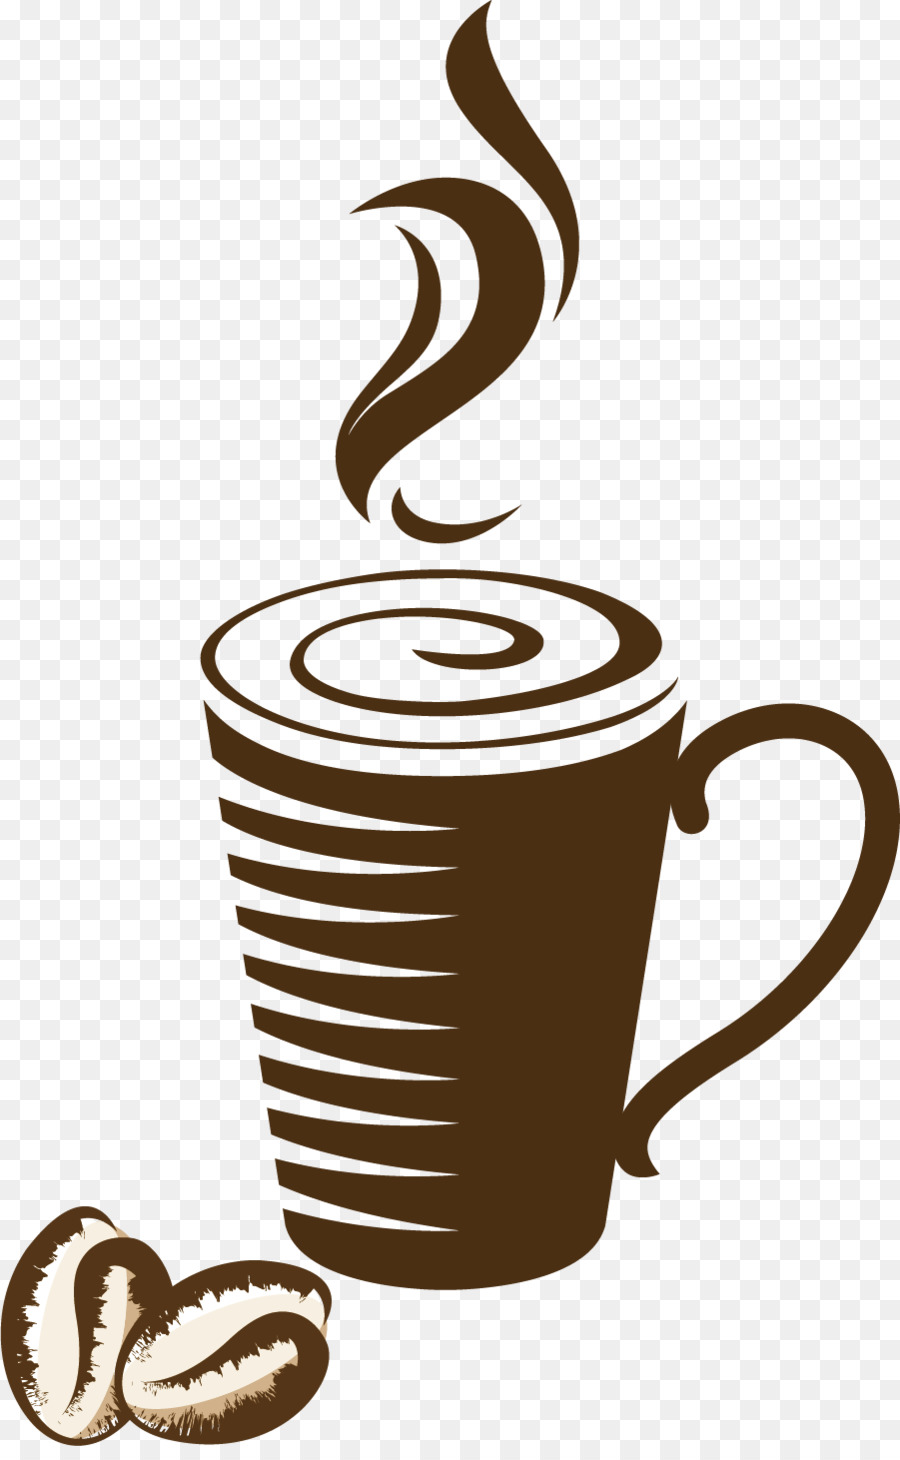 Bianco, caffè, Caffè latte, Caffè in tazza Caffxe8 moka - Dipinto a mano marrone tazza di caffè